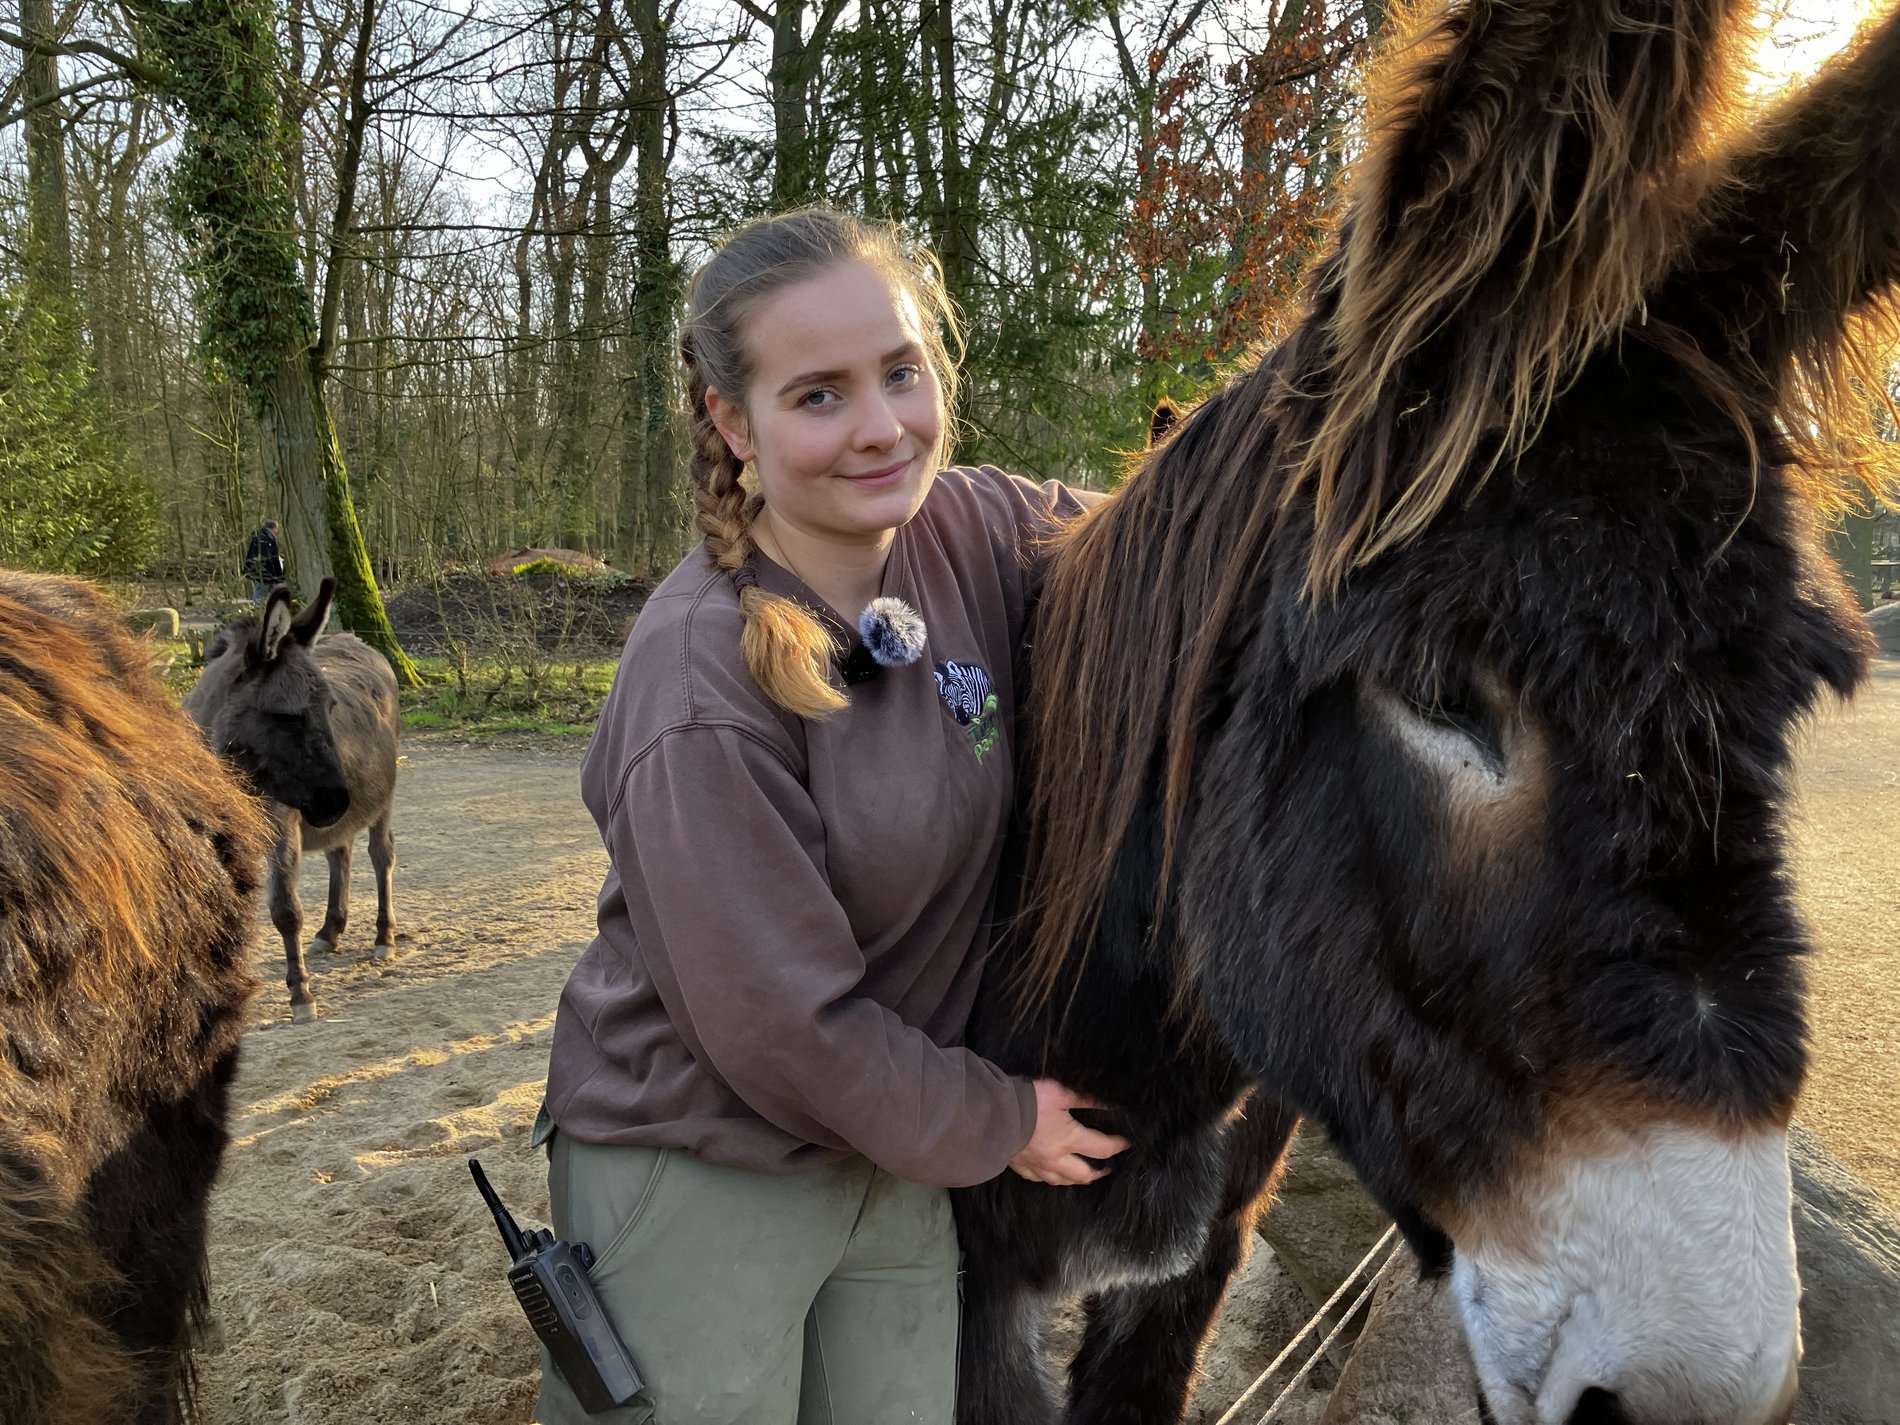 Tierzucht für mehr Nachhaltigkeit: Eine junge Frau legt einen Arm um den Kopf eines Zamorano-Esels.